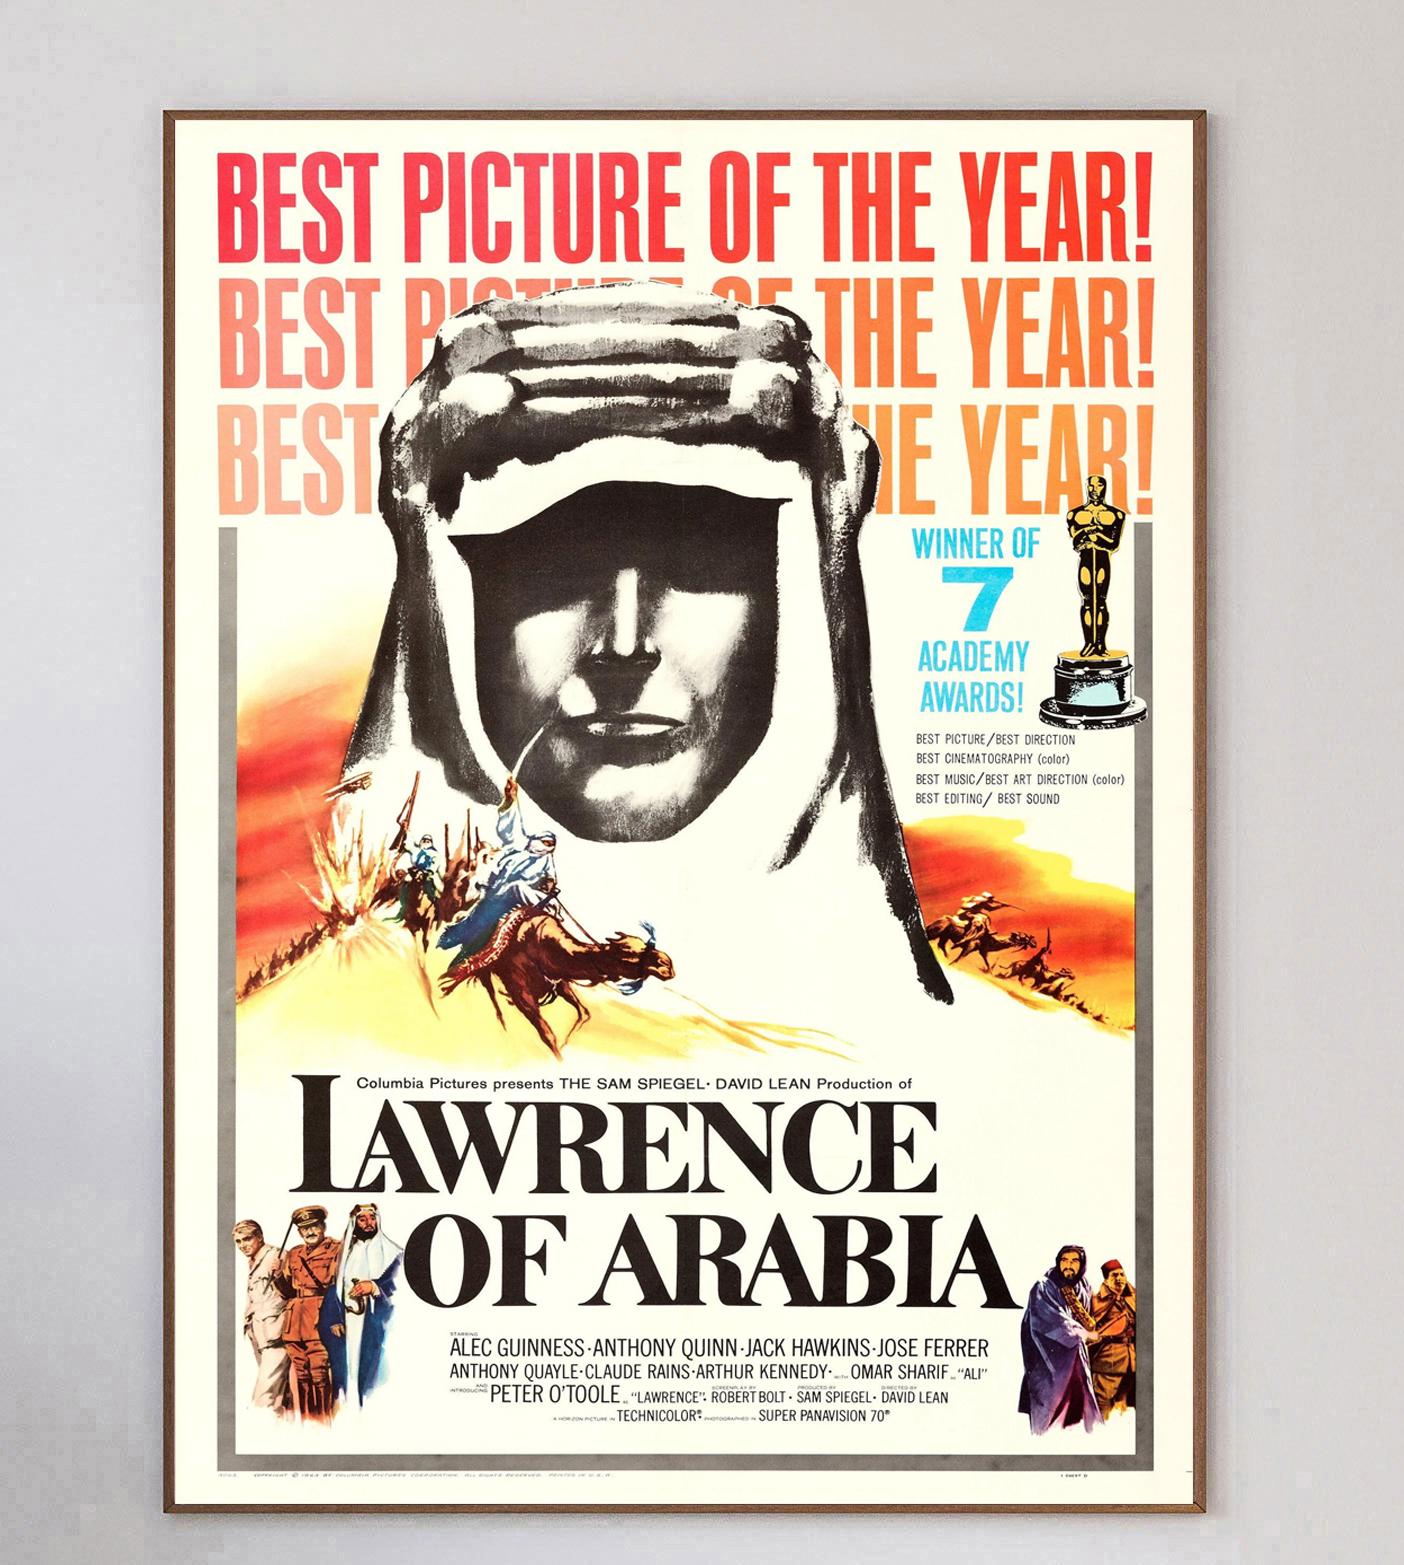 Lawrence d'Arabie, l'un des films les plus importants et les plus influents de tous les temps, est sorti en 1962. Basé sur la vie de T.E. Peters, le film a été réalisé par David Lean et interprété par Peter O'Toole et Alec Guinness, et a remporté 7